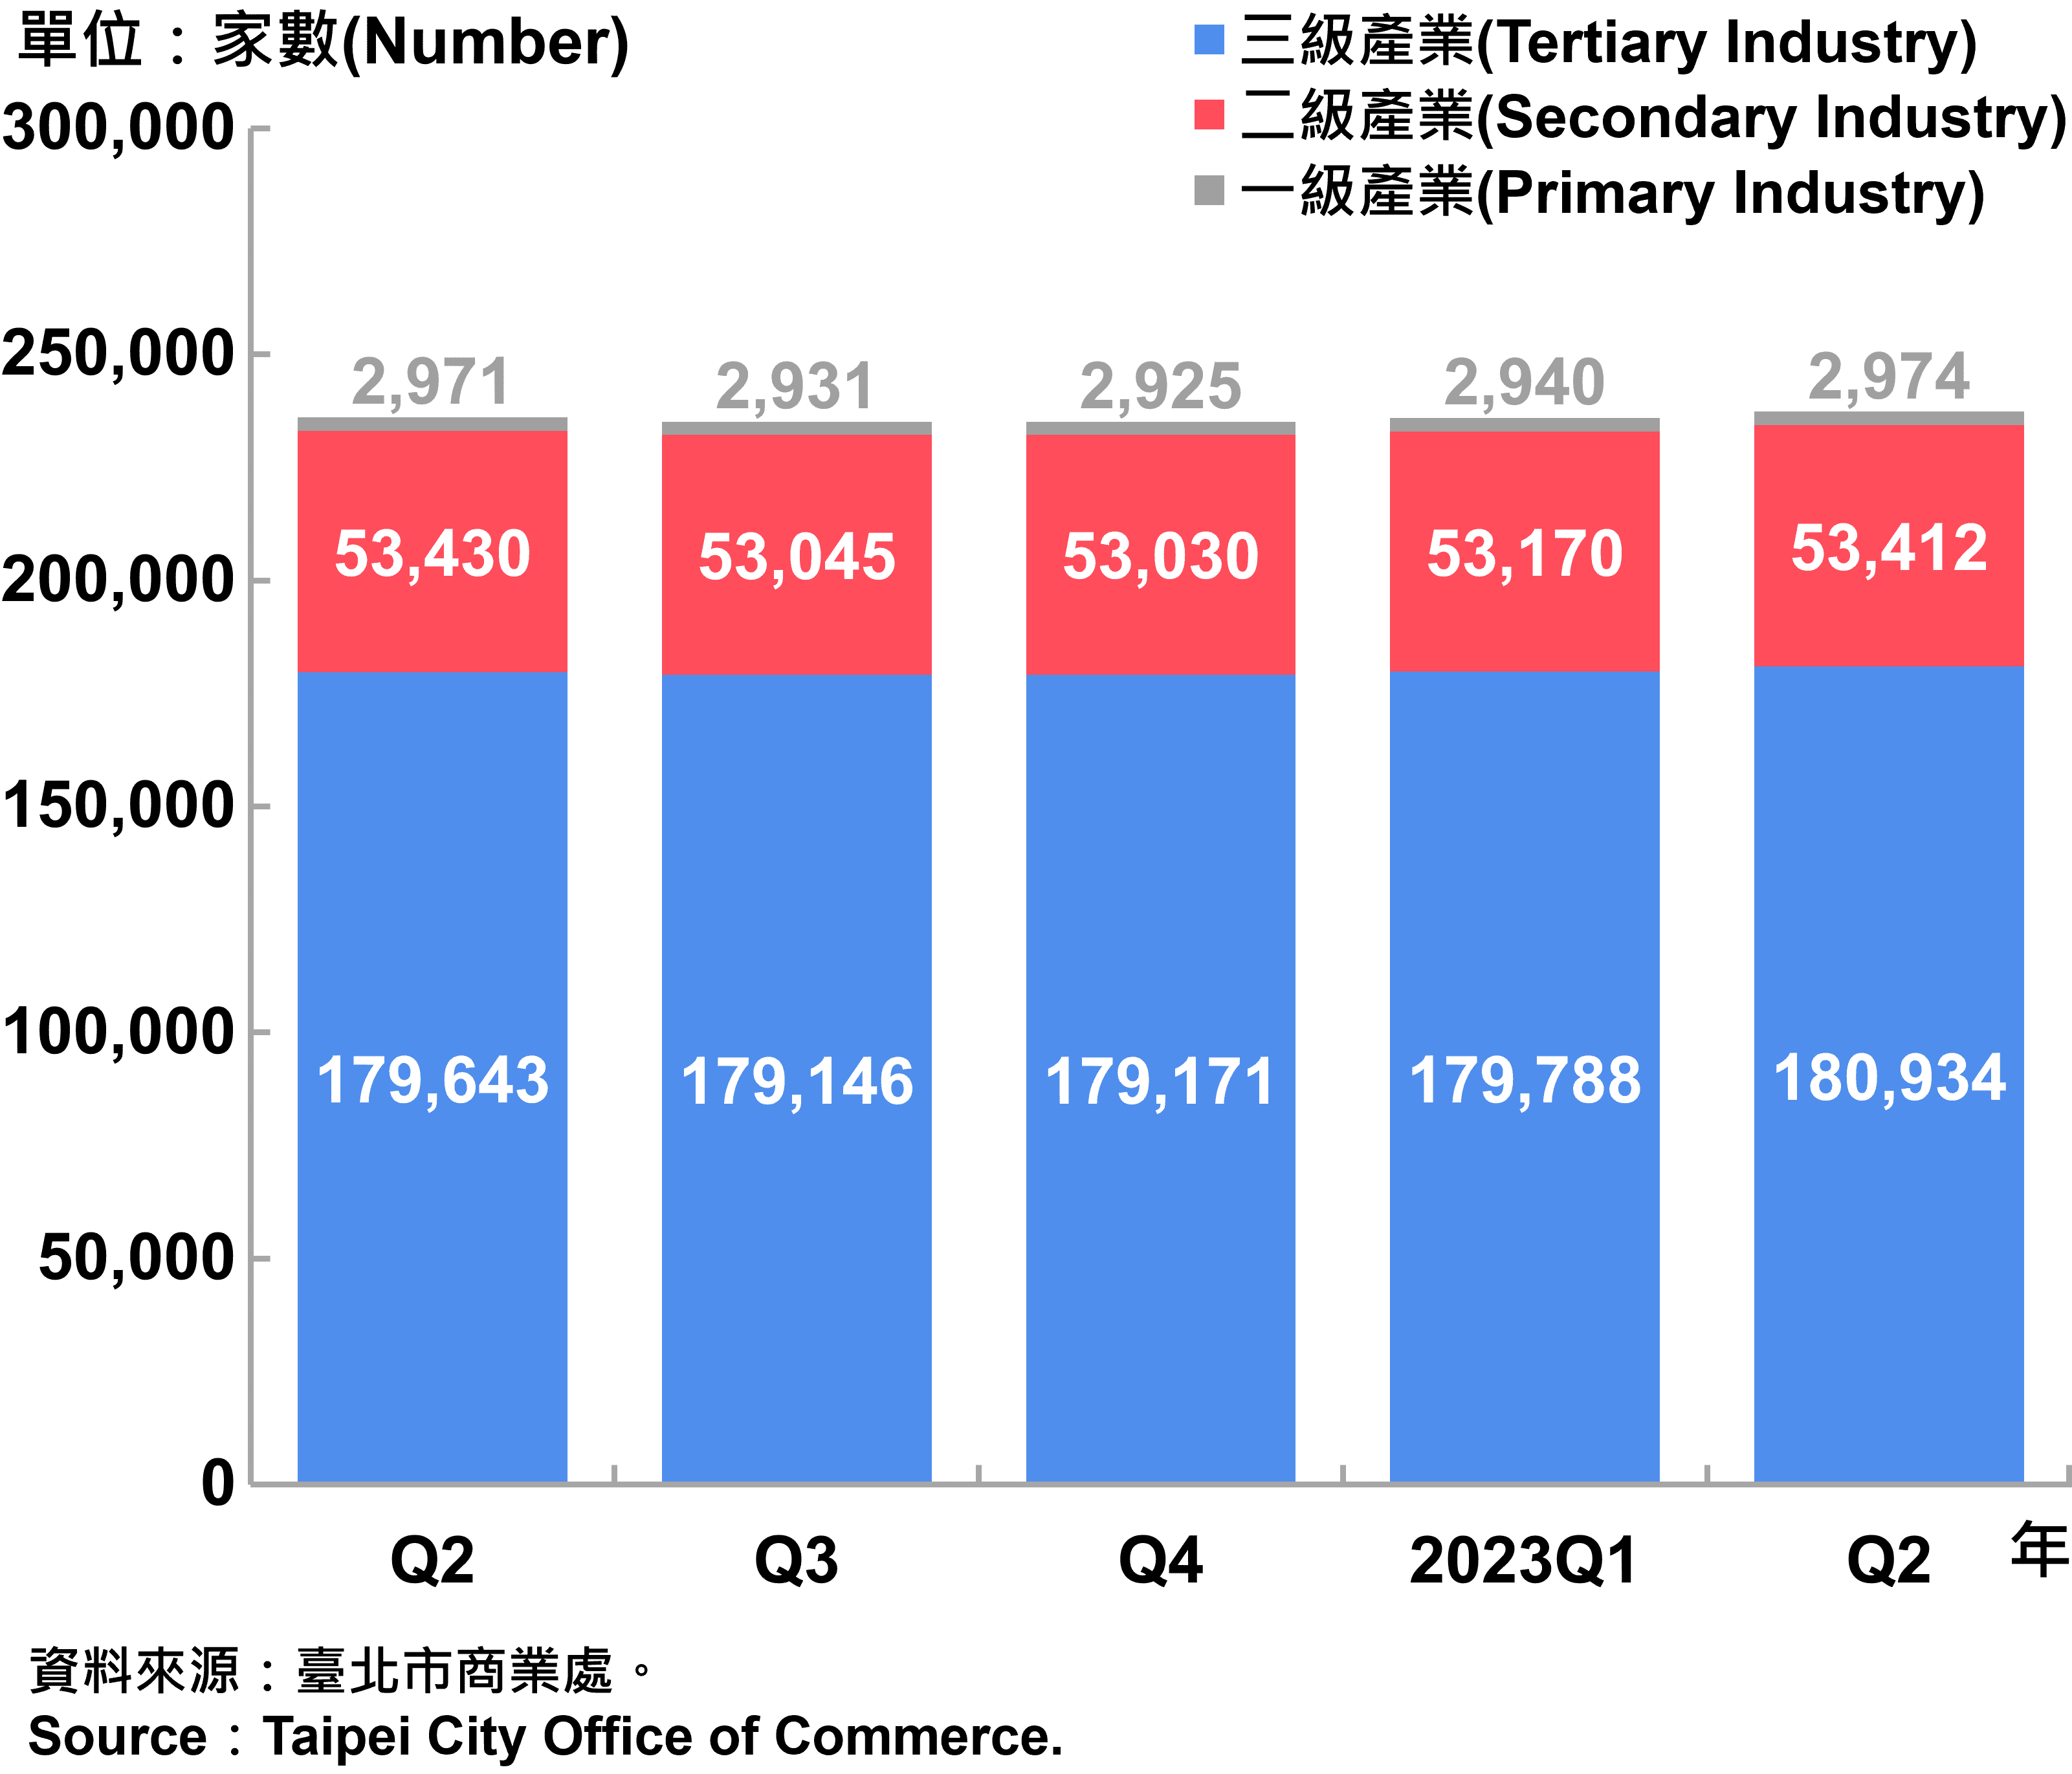 臺北市一二三級產業登記家數—2023Q2Number of Primary , Secondary and Tertiary Industry in Taipei City—2023Q2